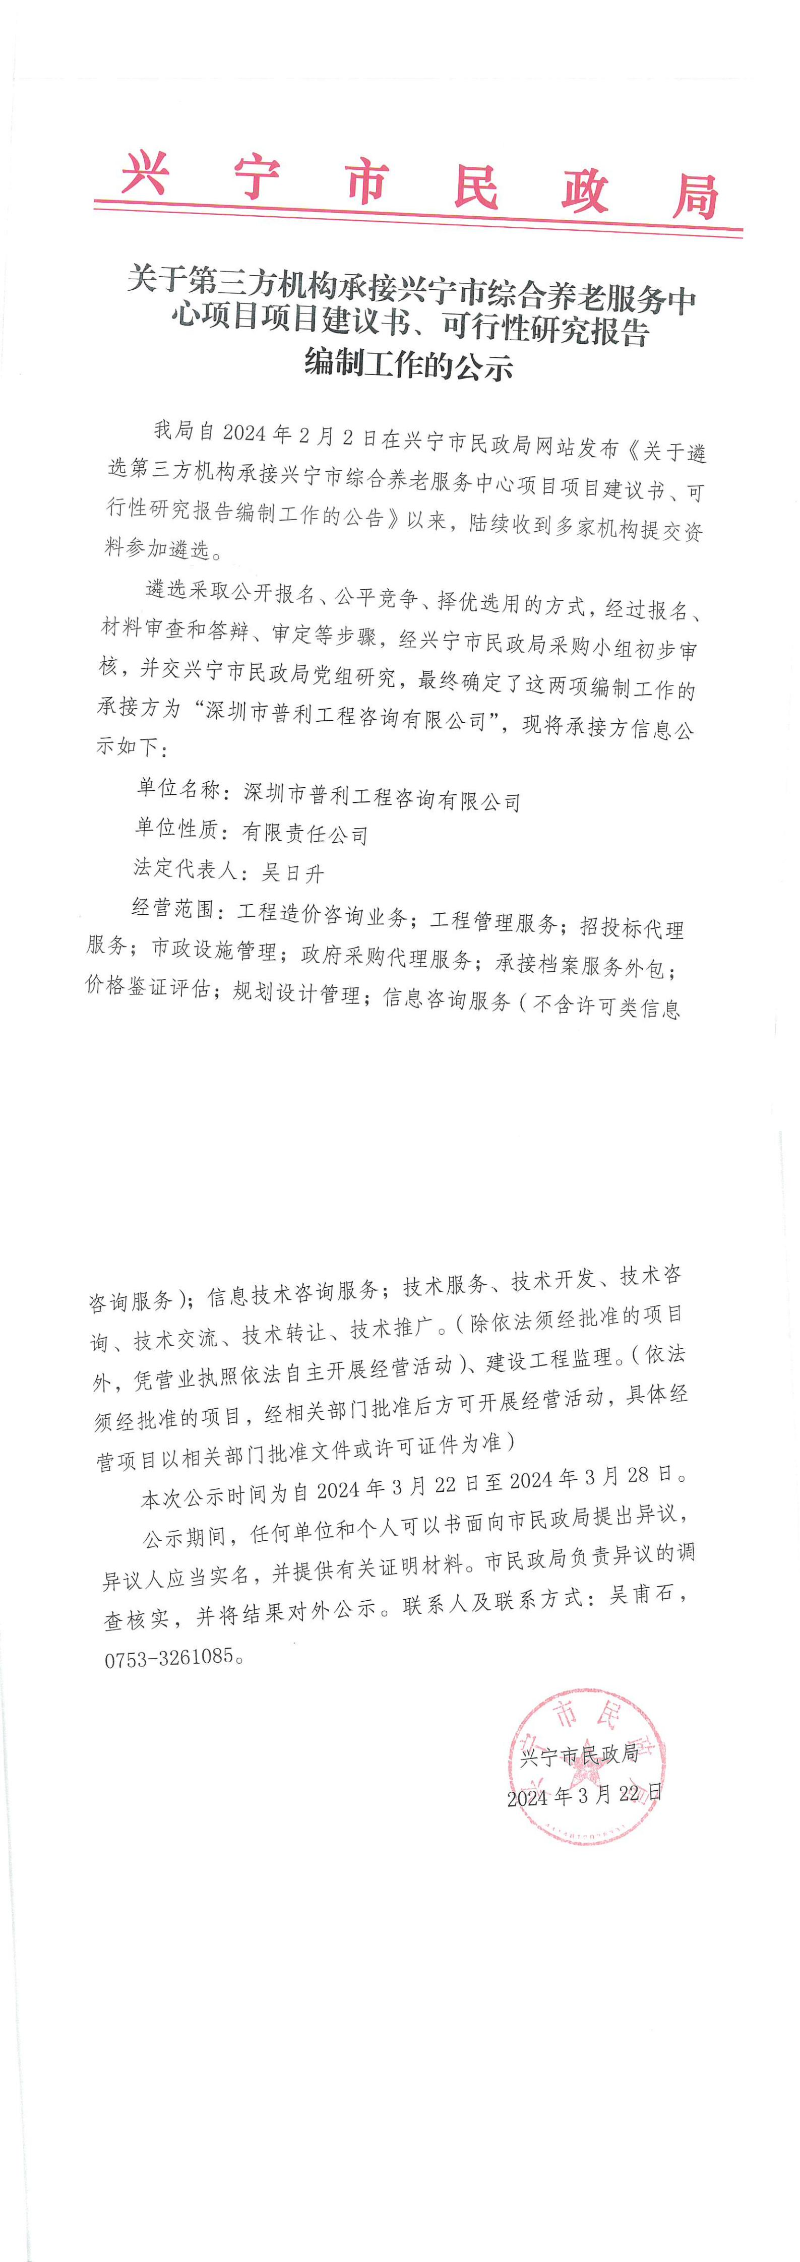 关于第三方机构承接兴宁市综合养老服务中心项目项目建议书、可行性研究报告编制工作的公示_00.jpg